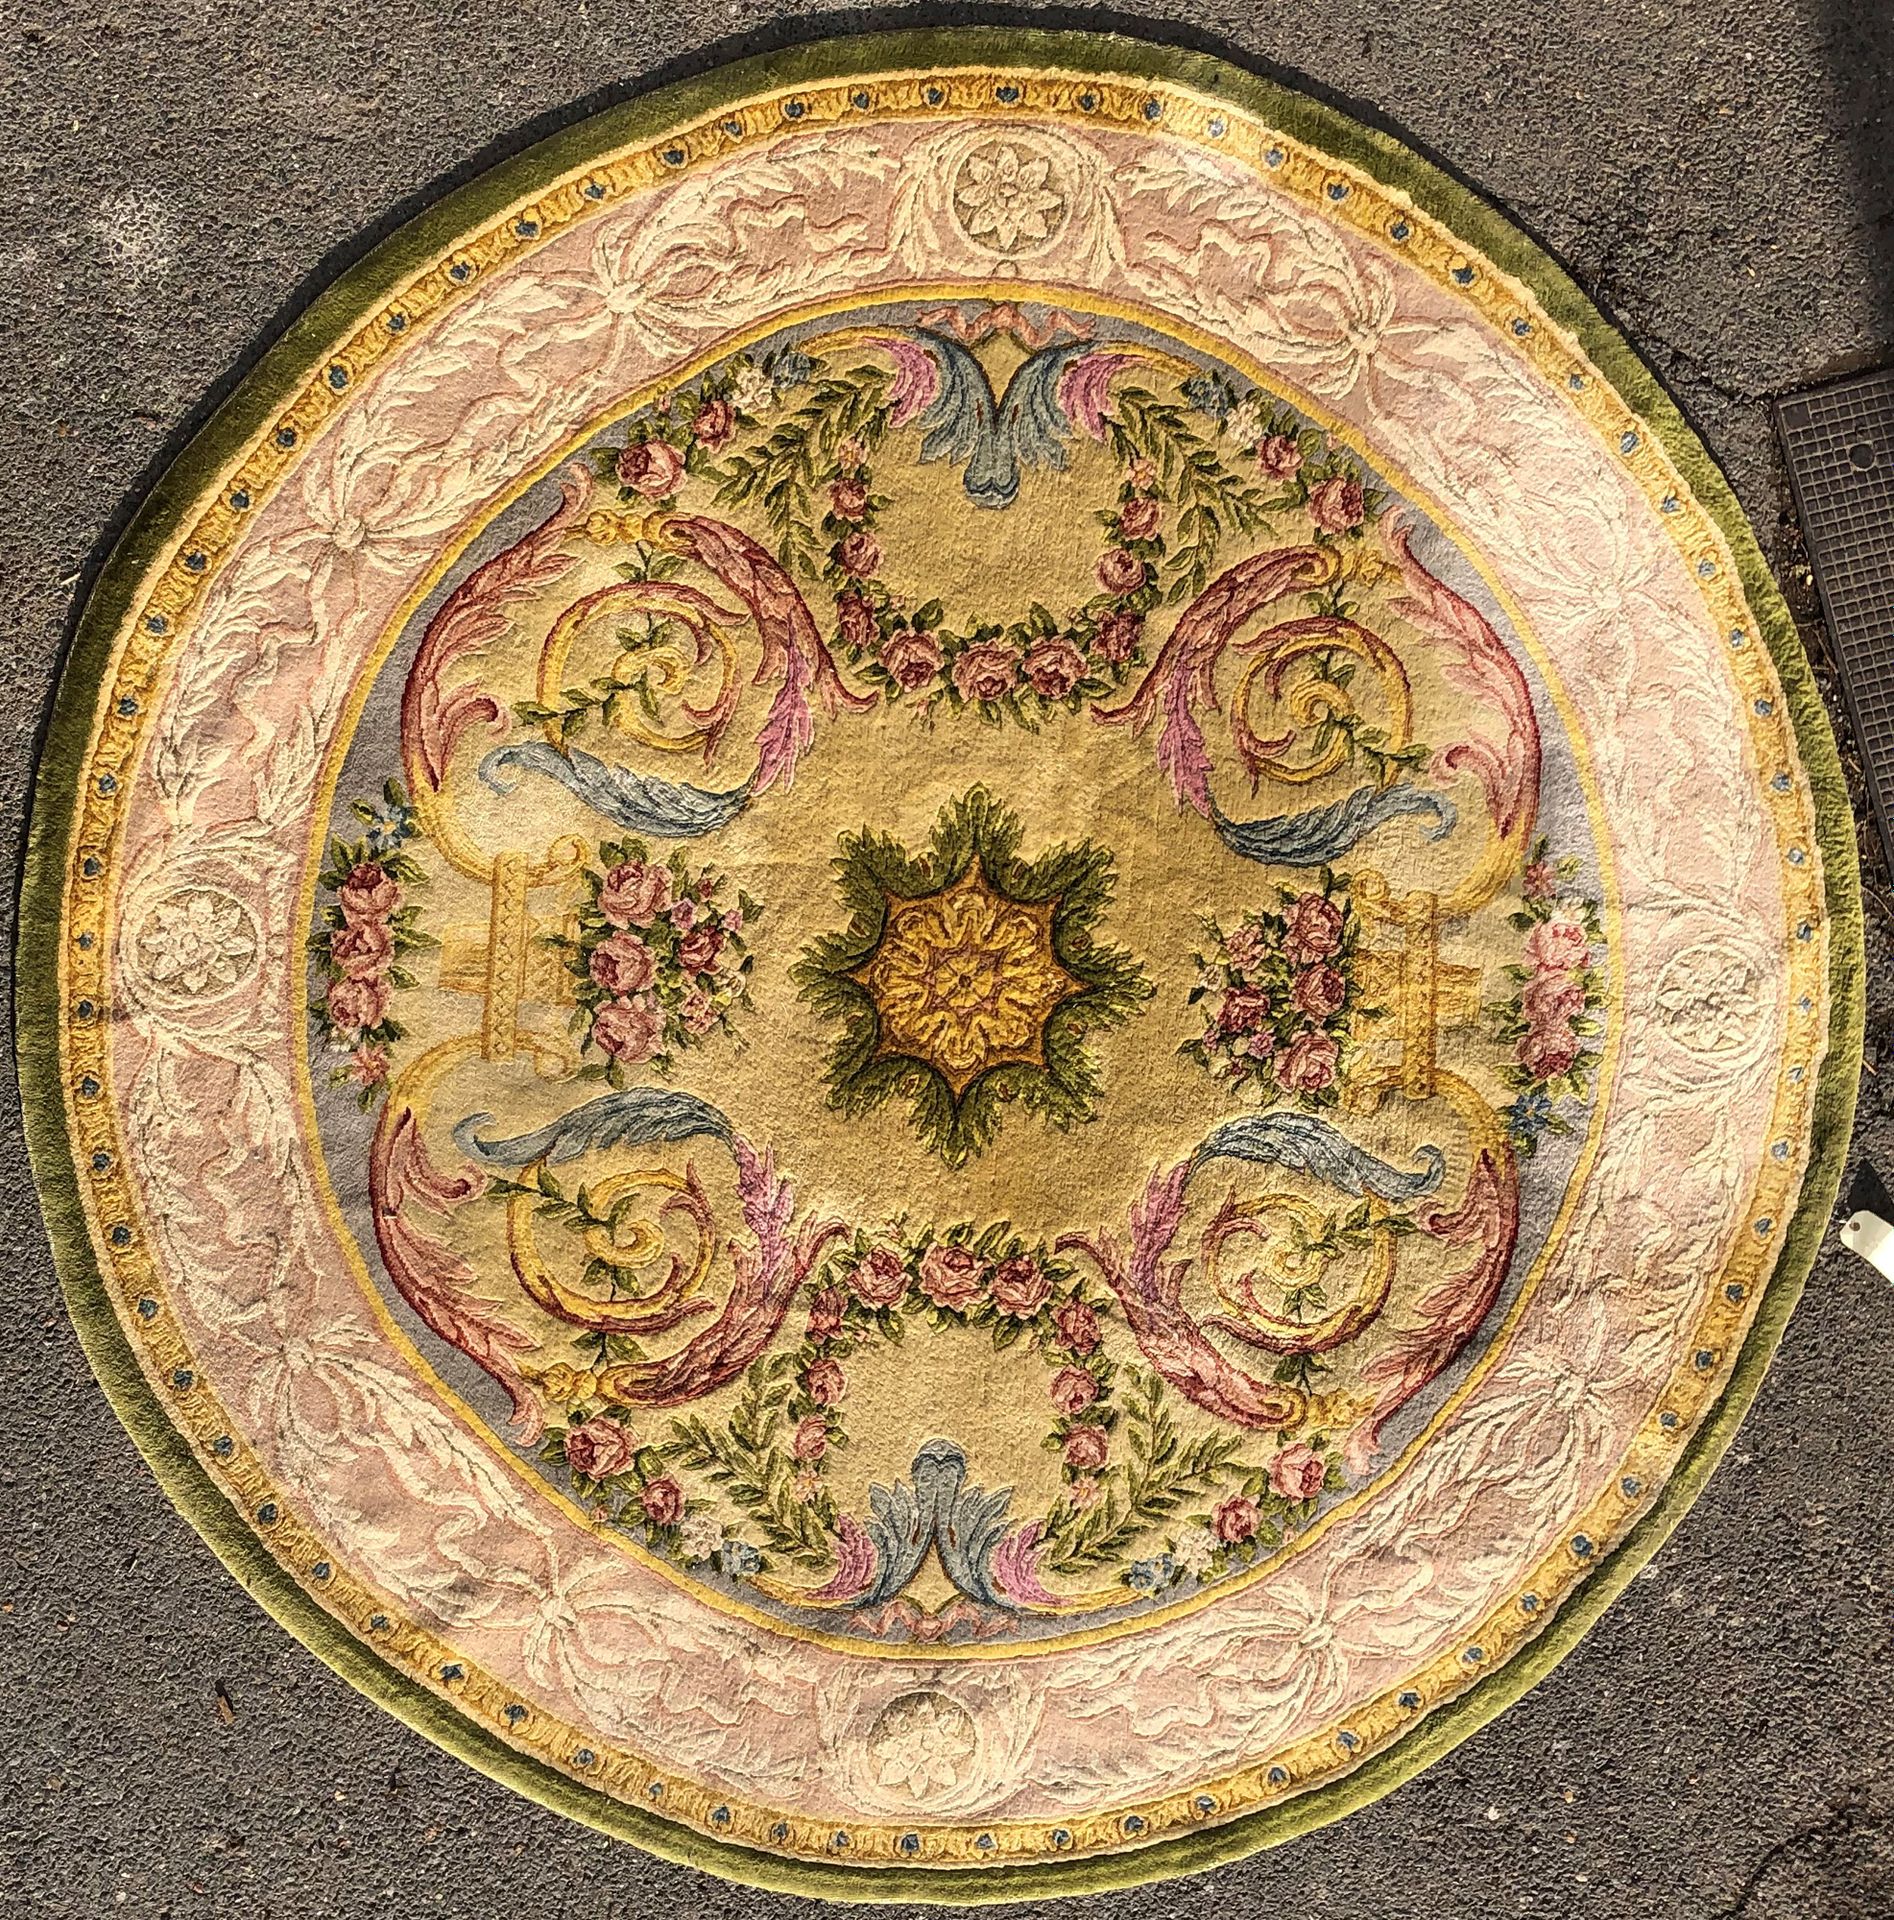 Null 肥皂点的圆形地毯，在奶油色的背景上装饰有刺绣卷轴、花瓶和玫瑰花环的花环。丁香色背景上的树叶边框。

D. 252厘米